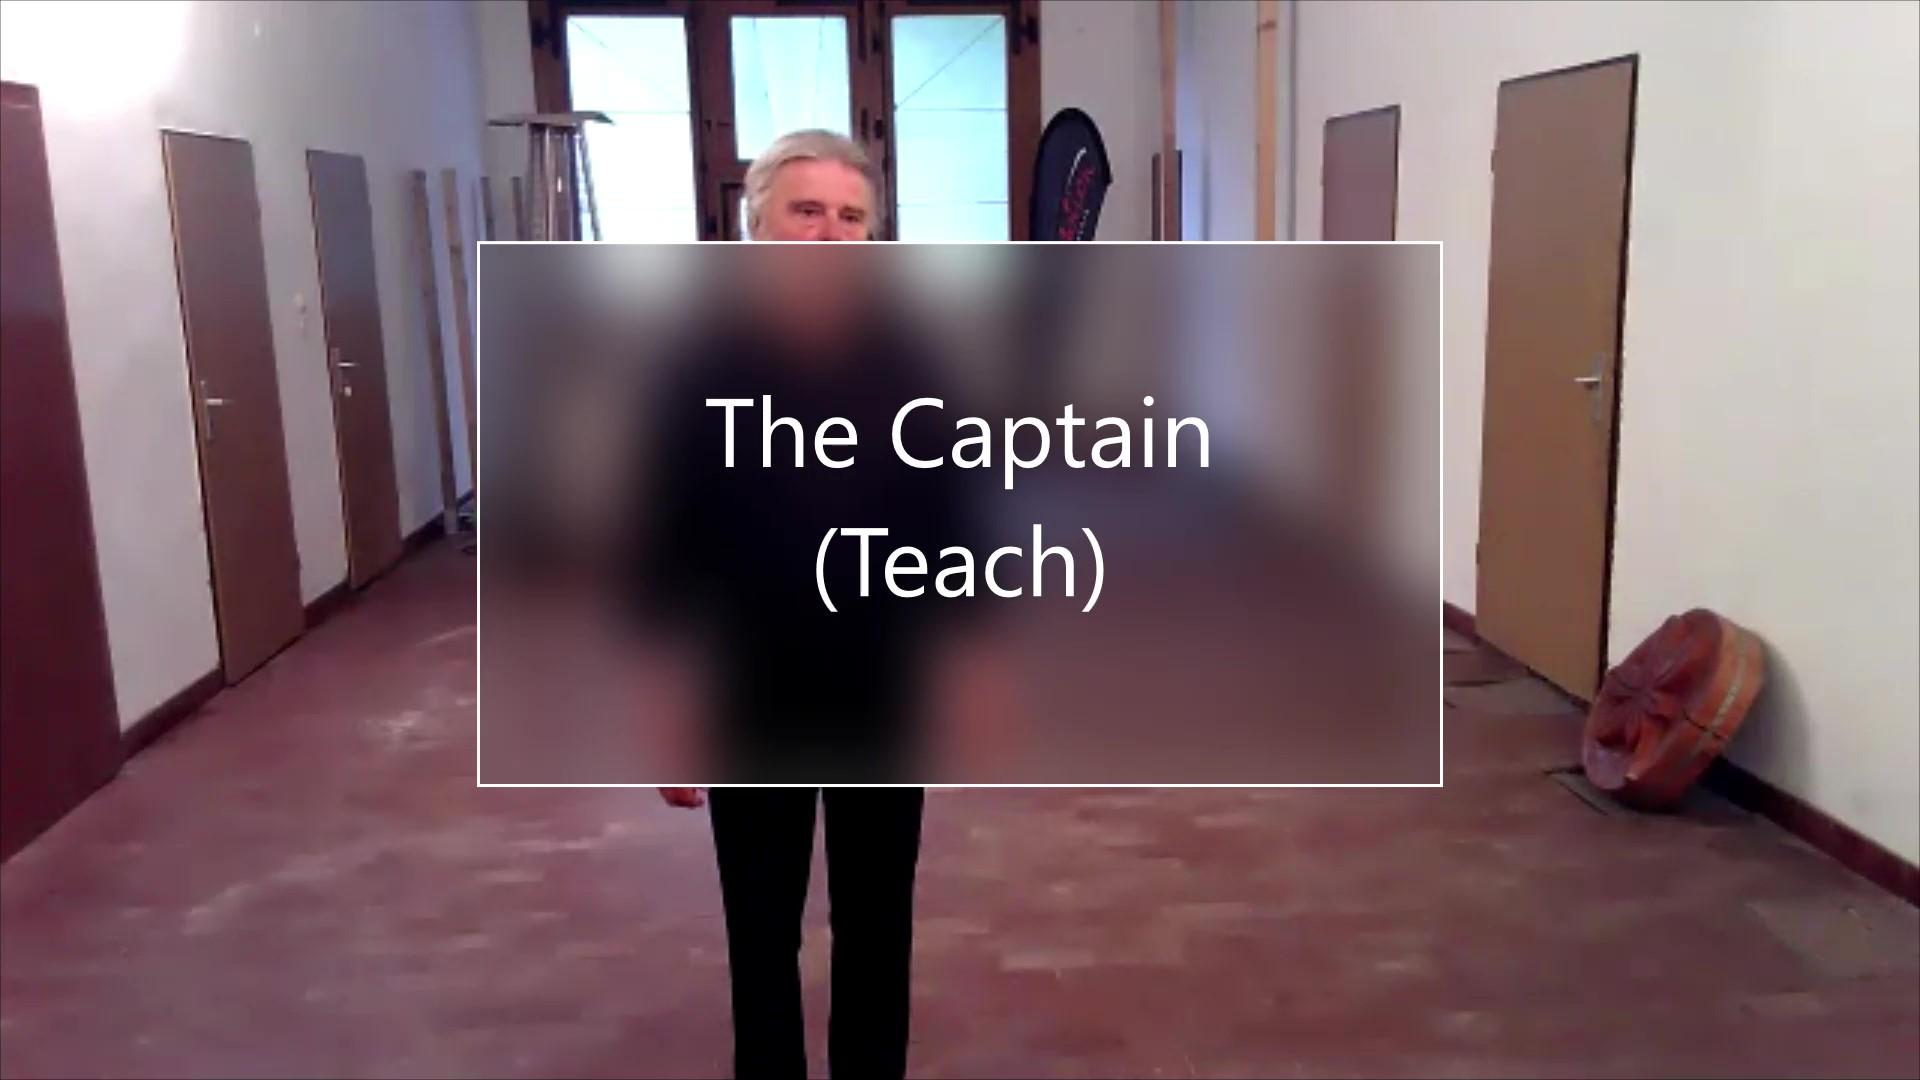 The Captain Teach